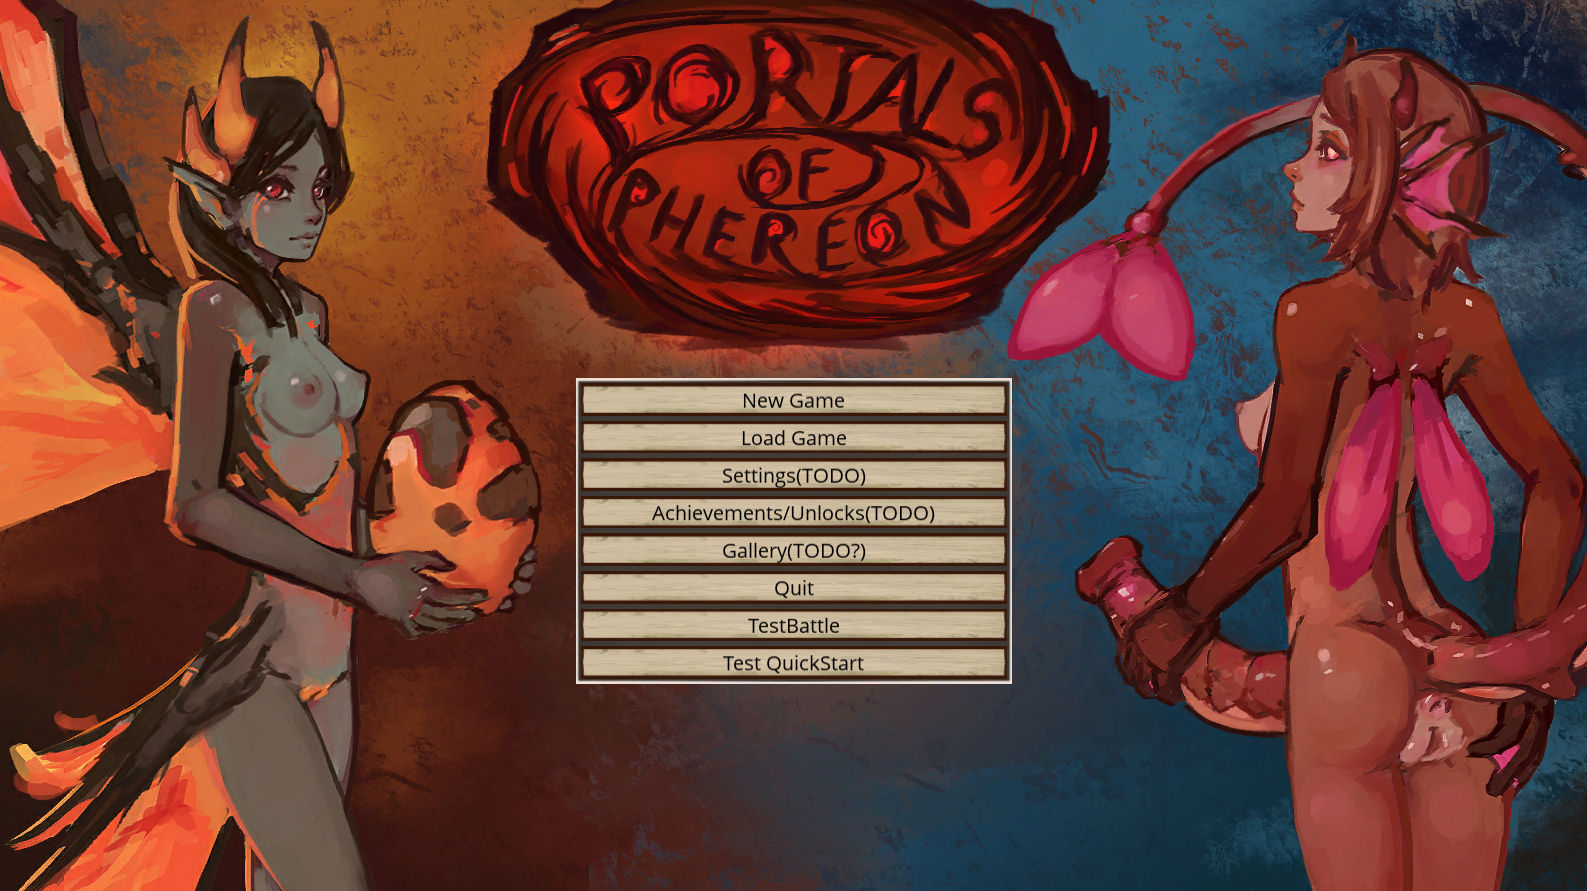 Portals of Pheroeon Version 0.5.2.1 by Syvaron Porn Game